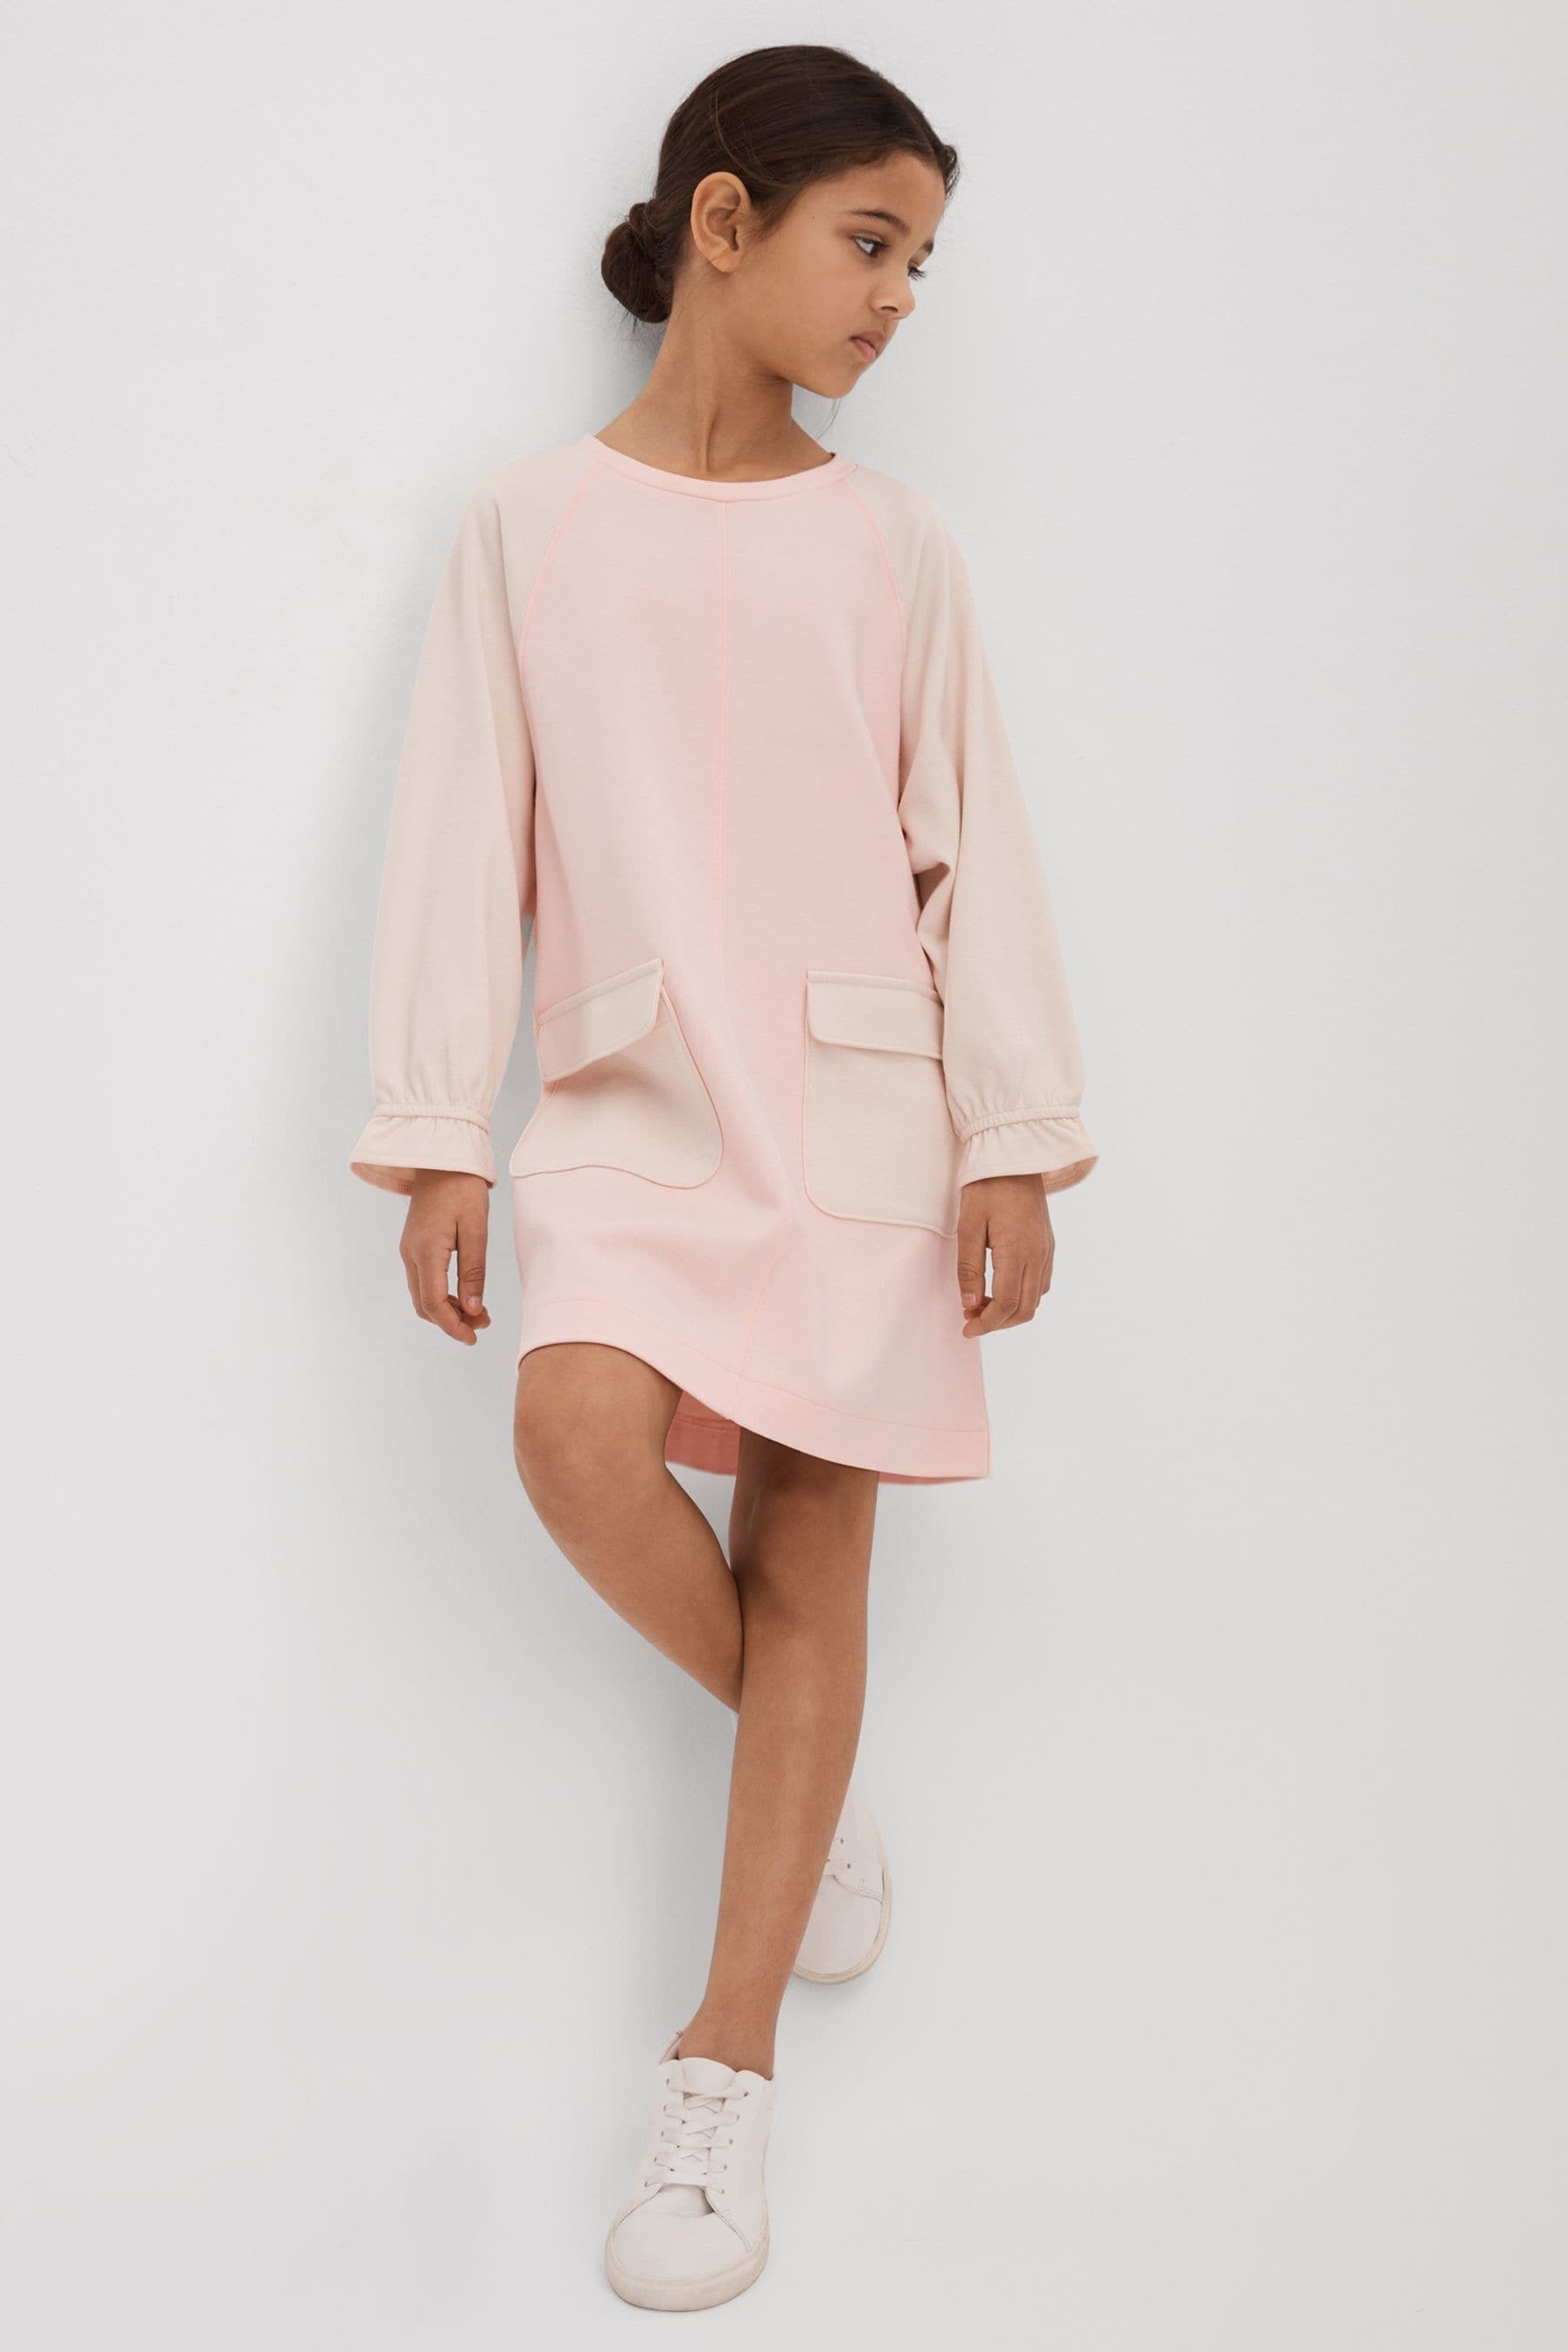 Shop Reiss Courtney - Pink Junior Colourblock Jersey Dress, Uk 7-8 Yrs